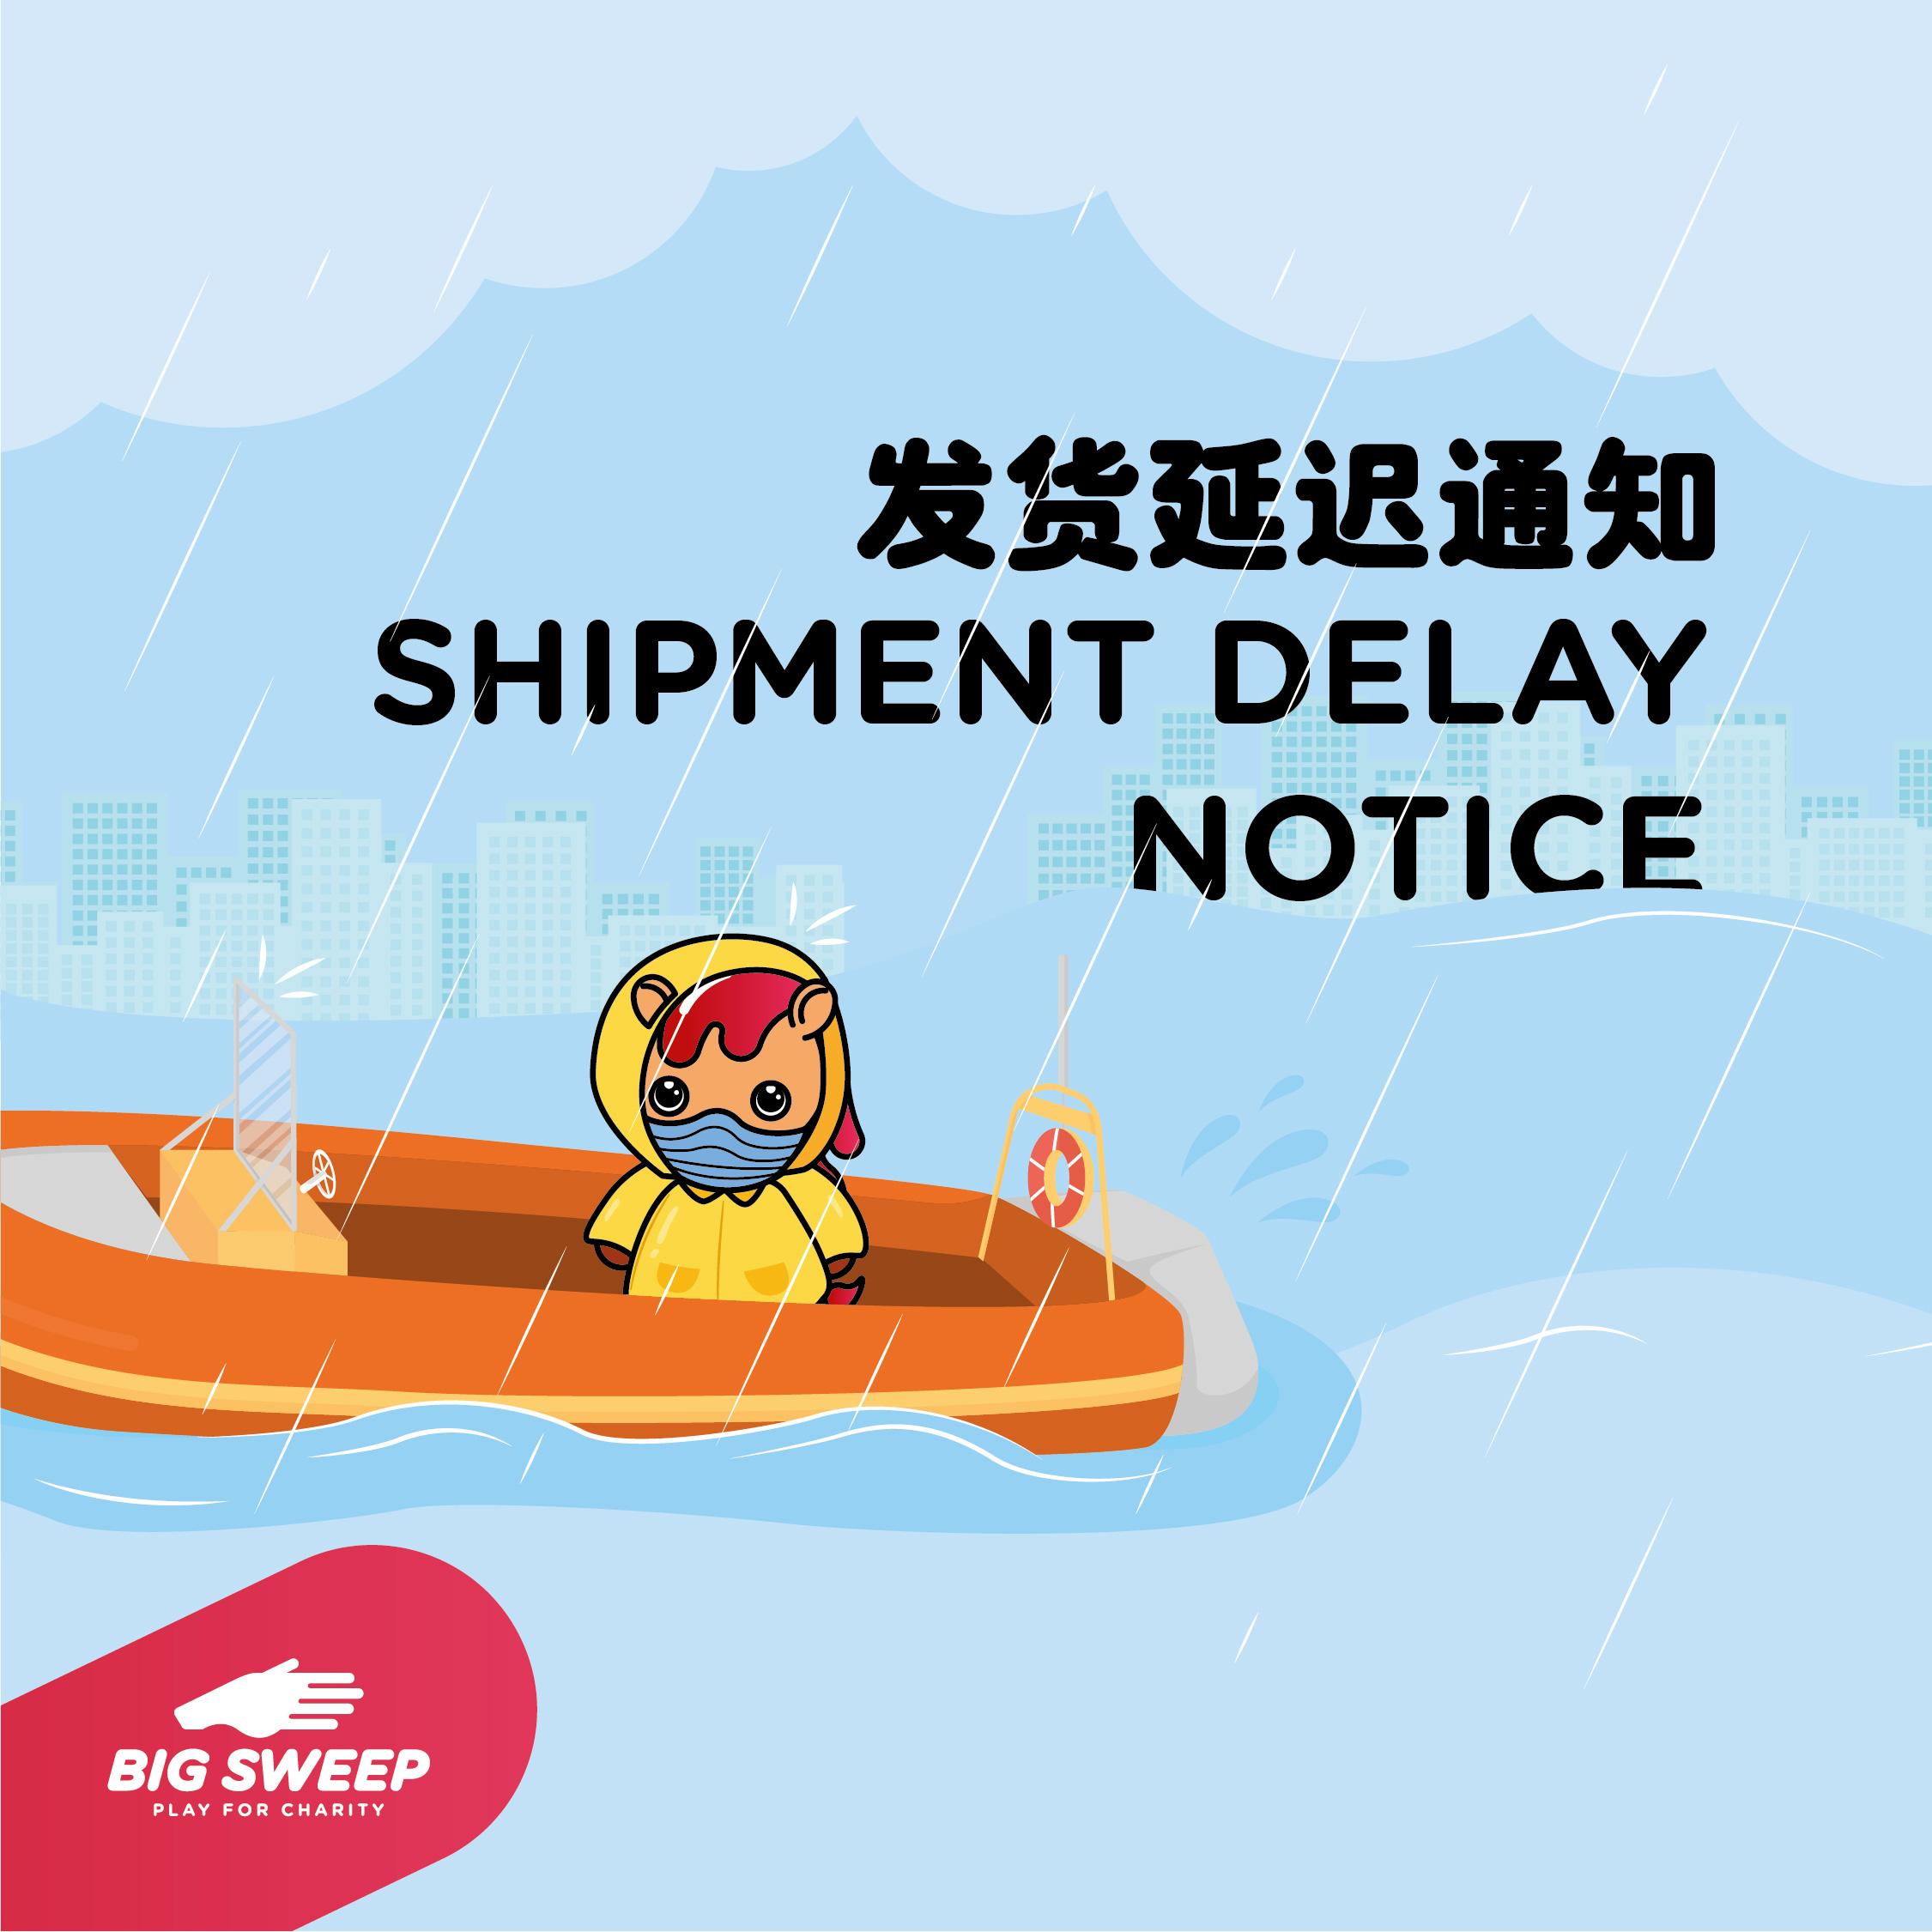 Shipment delay notice